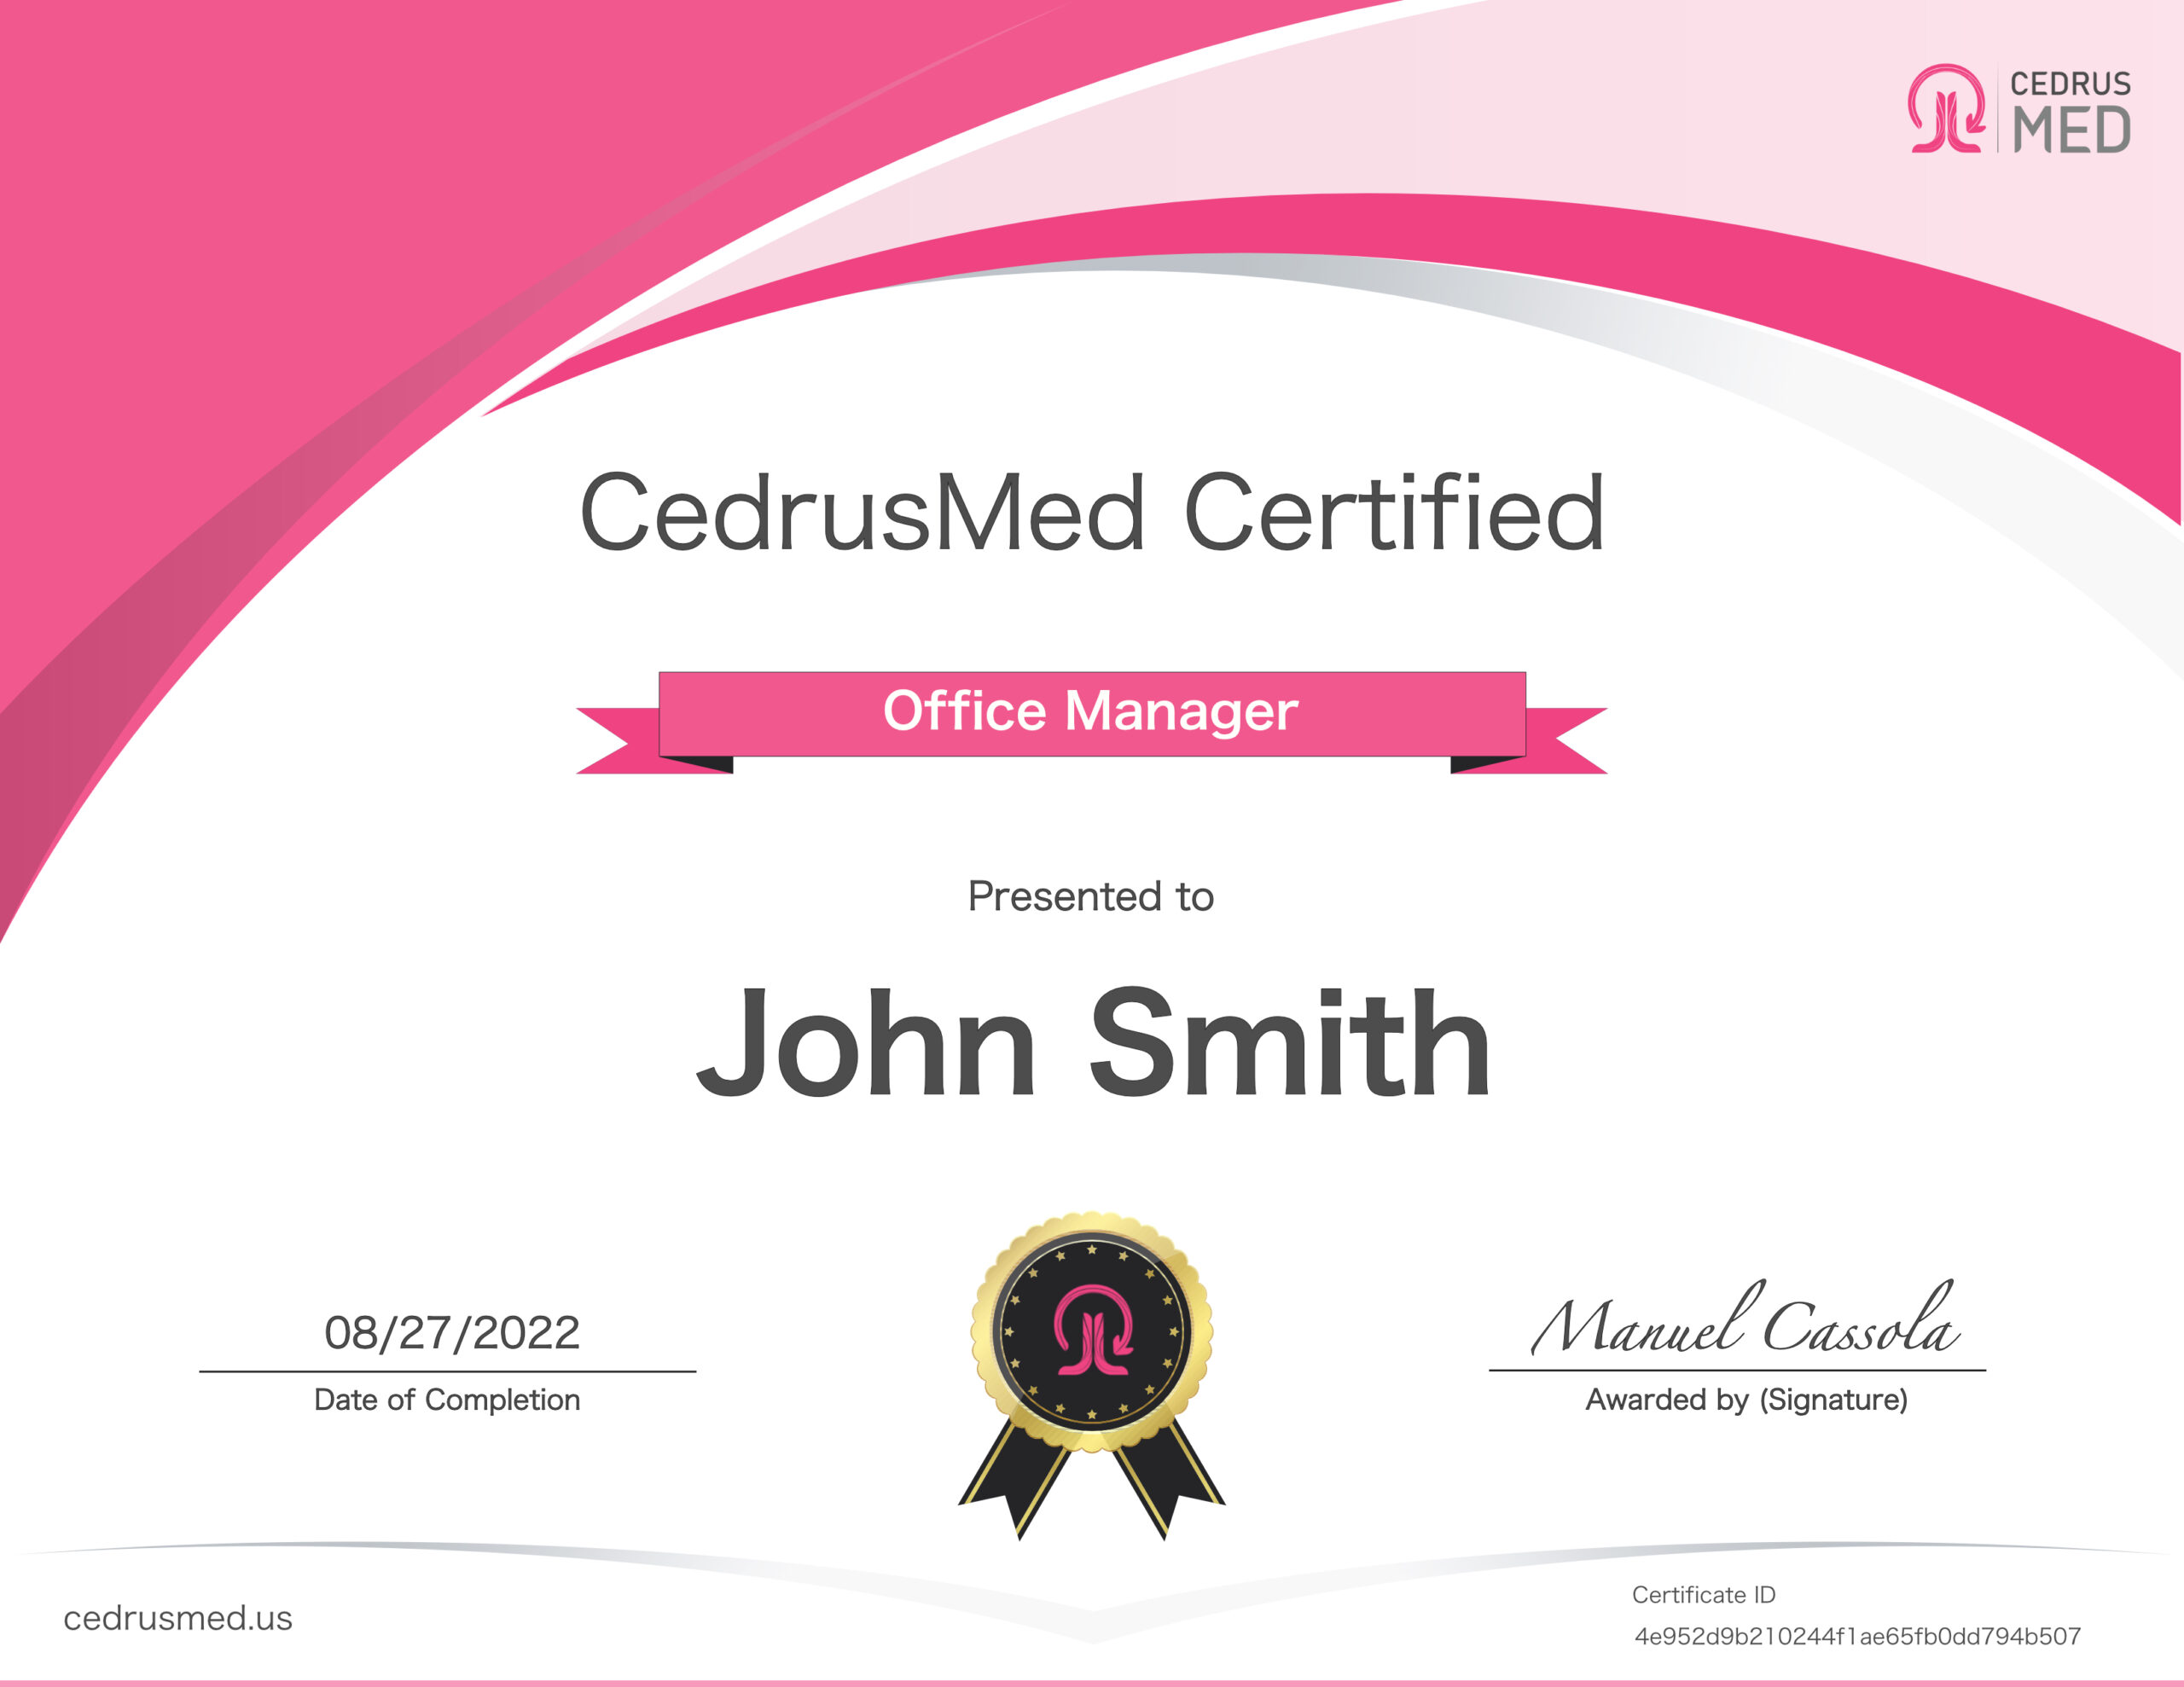 CedrusMed Certification